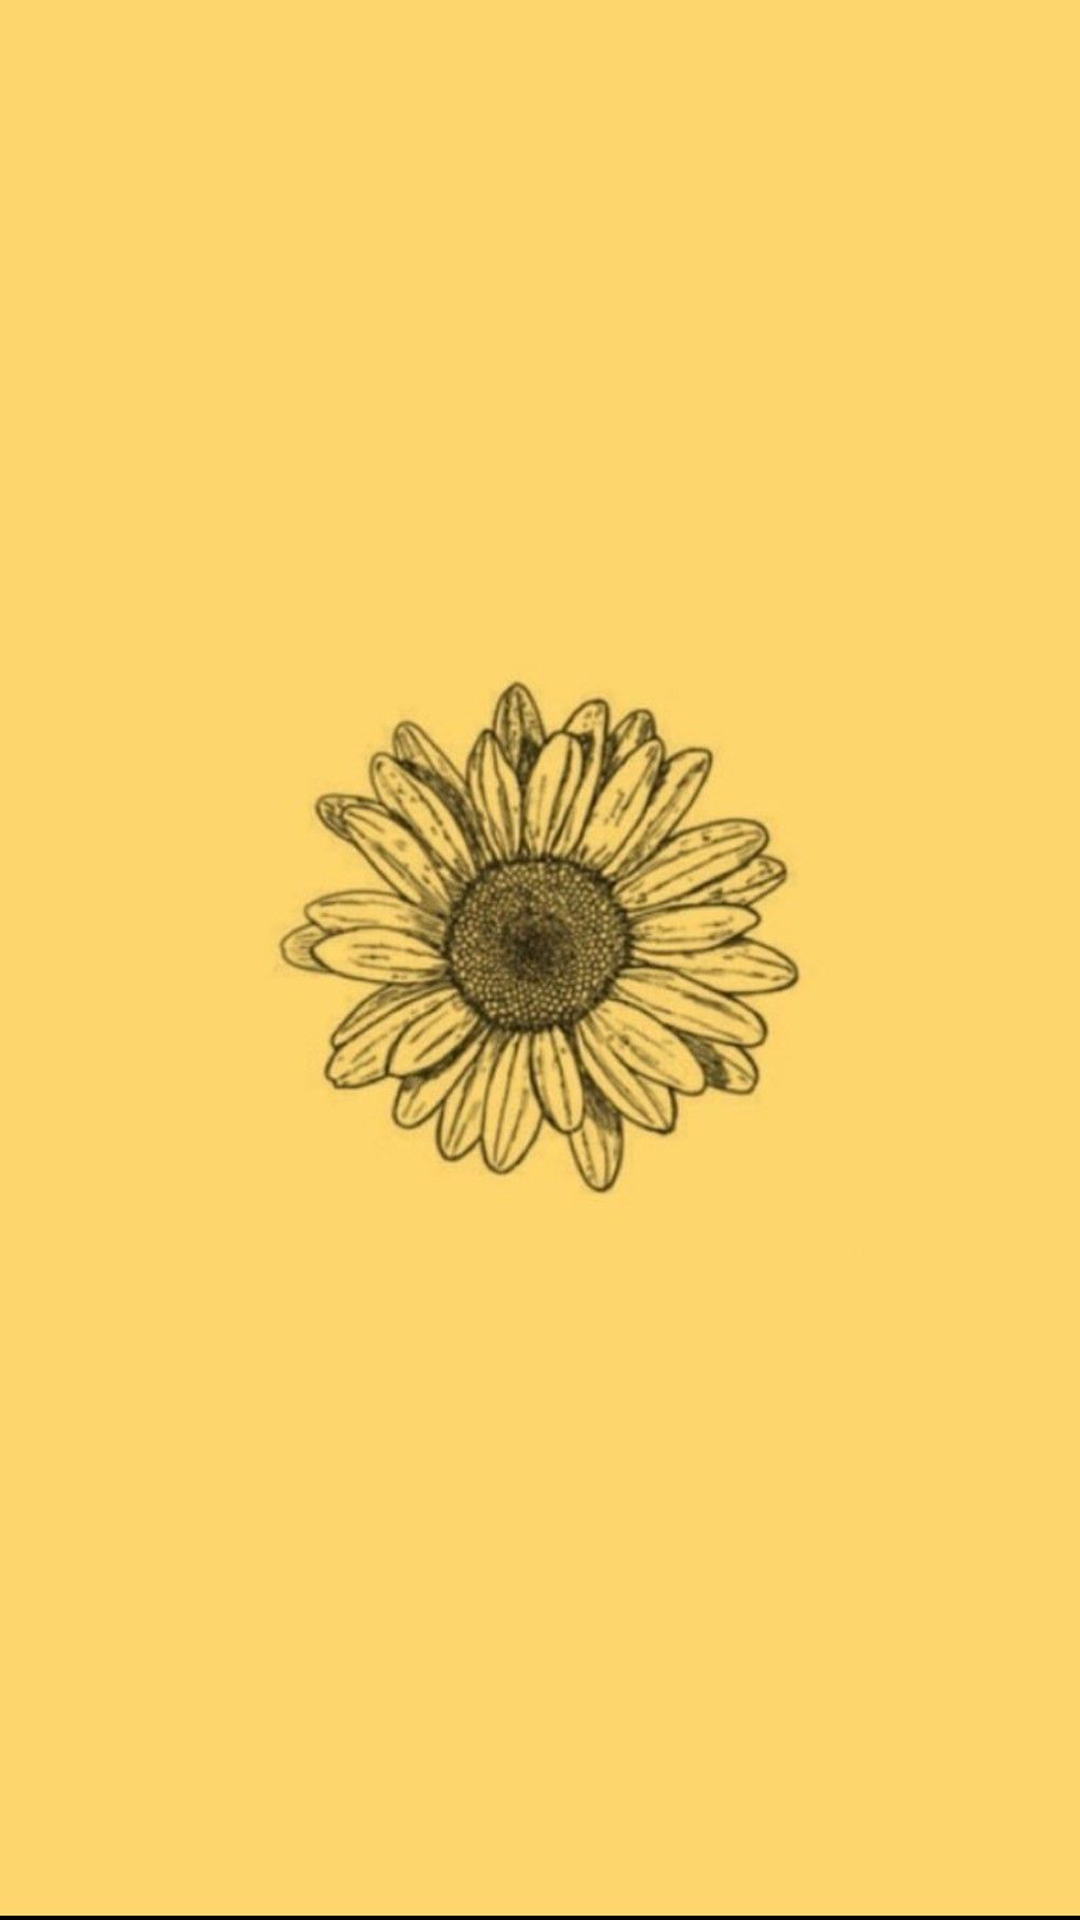 Vsco Sunflower Wallpapers